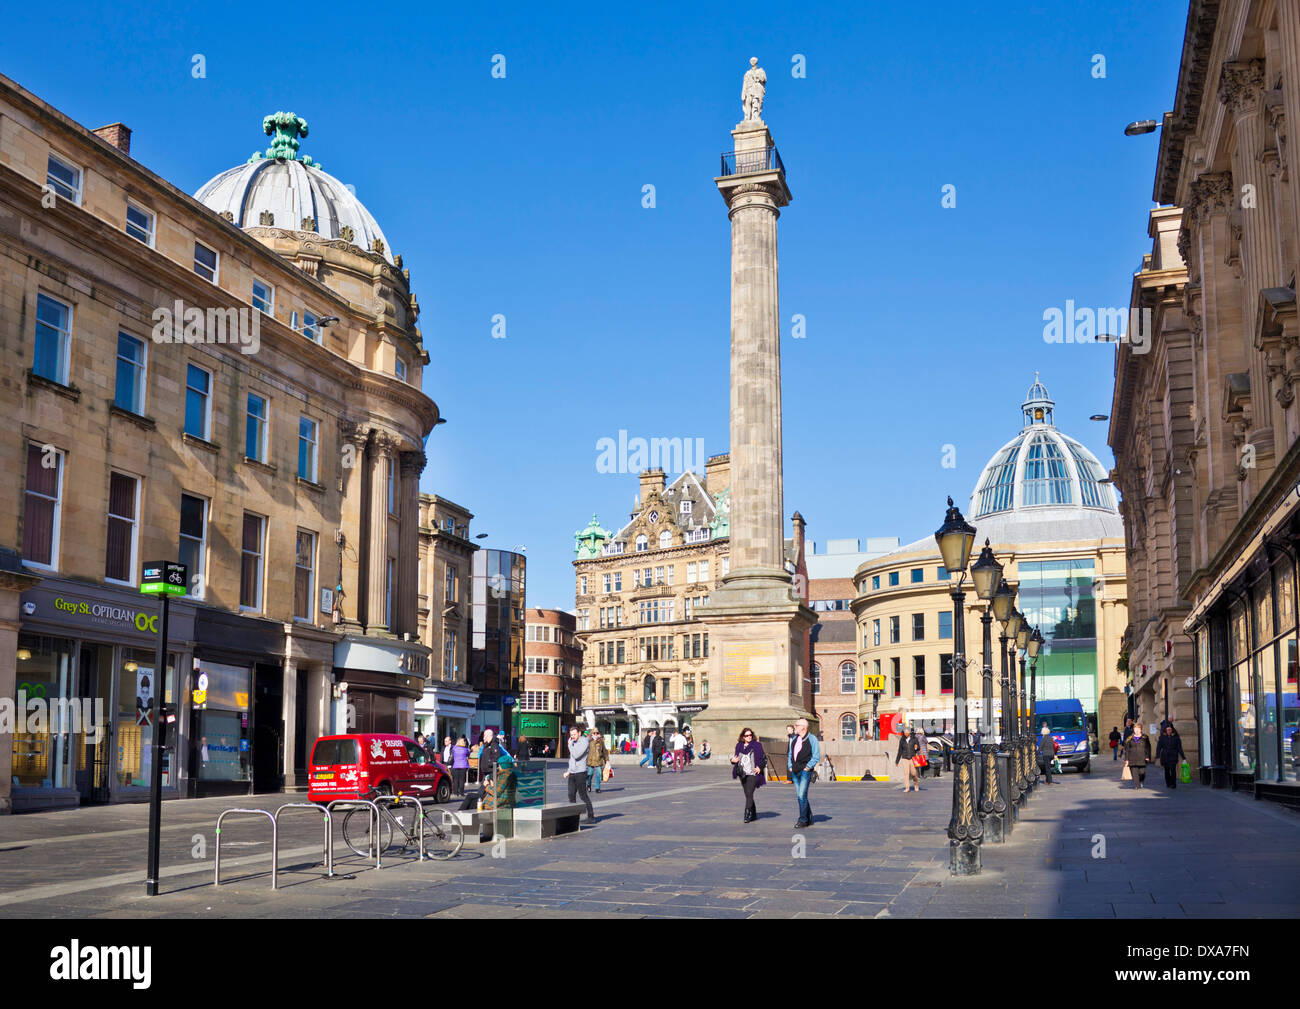 Gris Monument de Grey Street Grainger Town Newcastle upon Tyne centre-ville de Tyne et Wear Angleterre GO UK EU Europe Banque D'Images